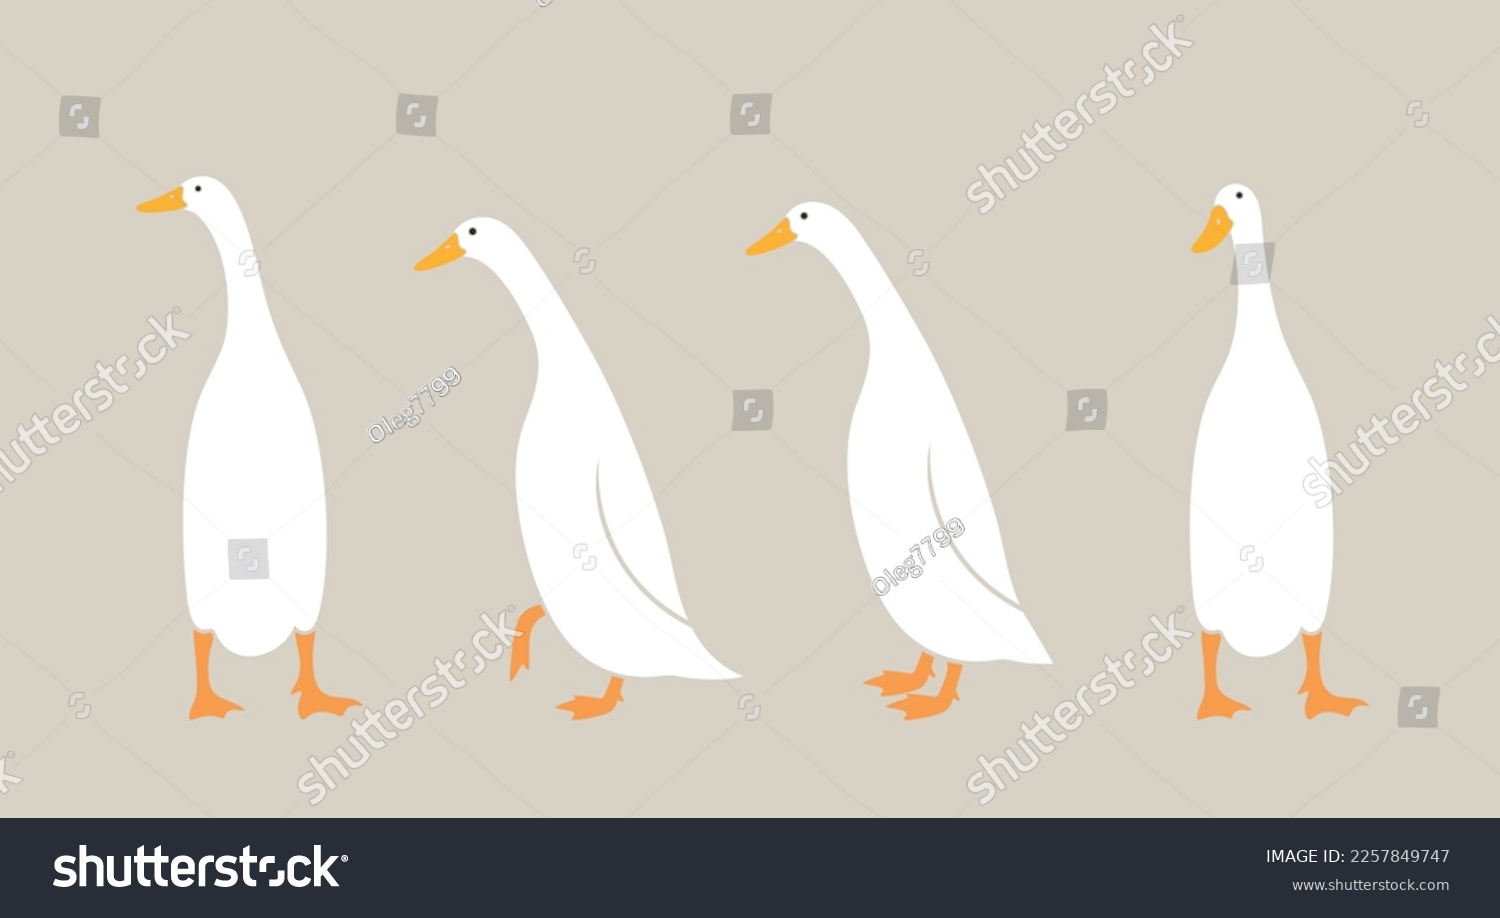 SVG of Indian runner ducks logo. Isolated indian runner ducks on white background. Bird svg